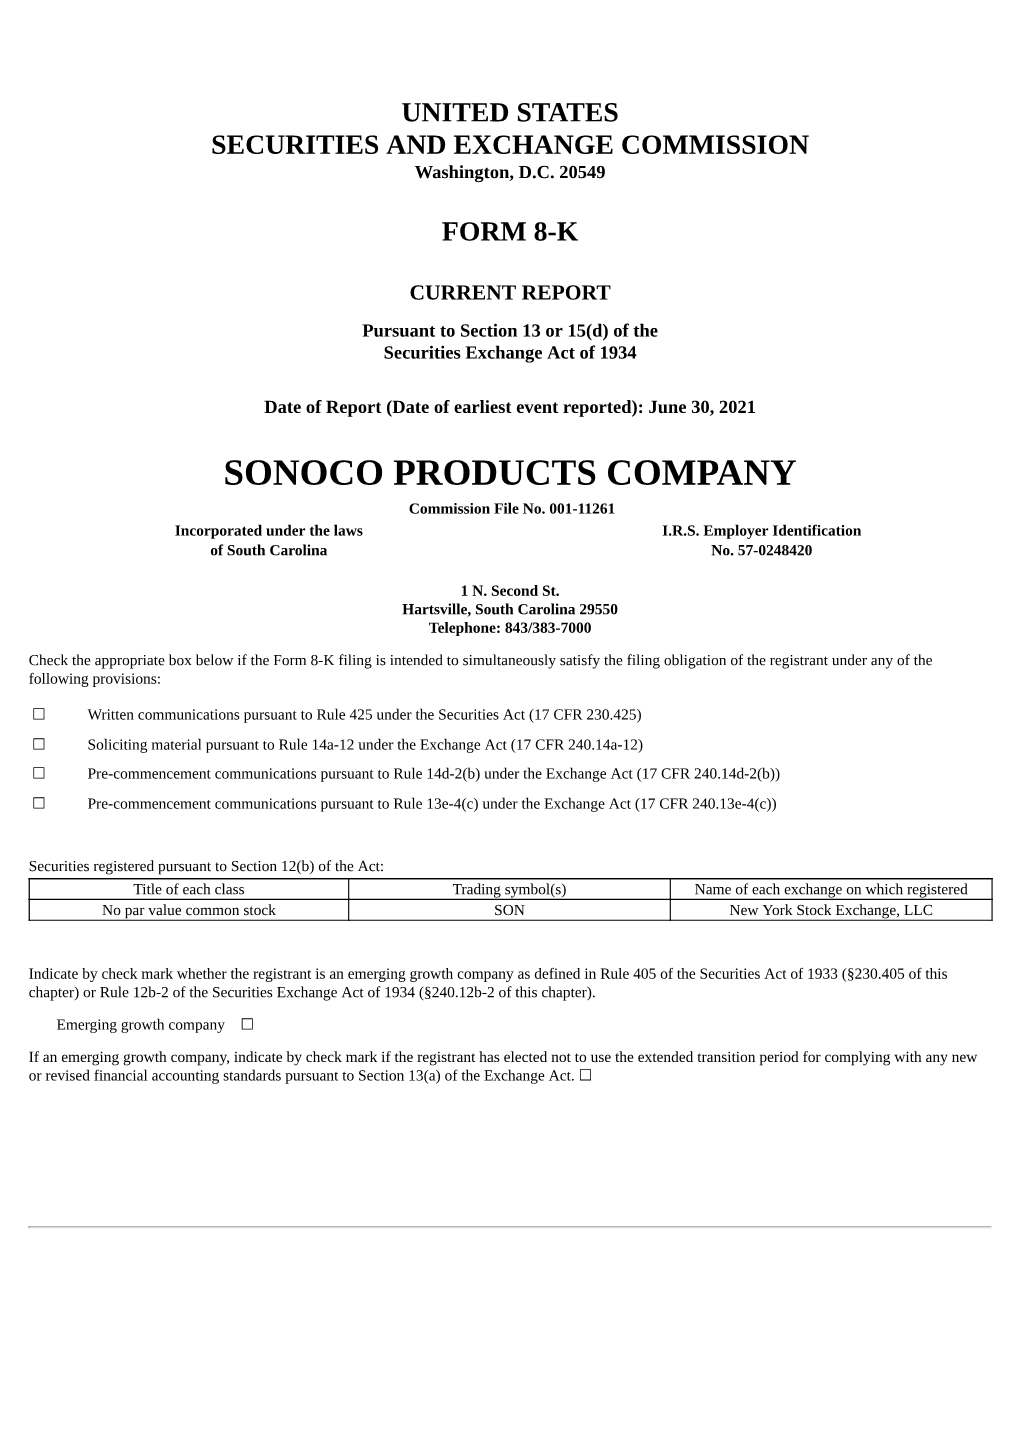 SONOCO PRODUCTS COMPANY Commission File No